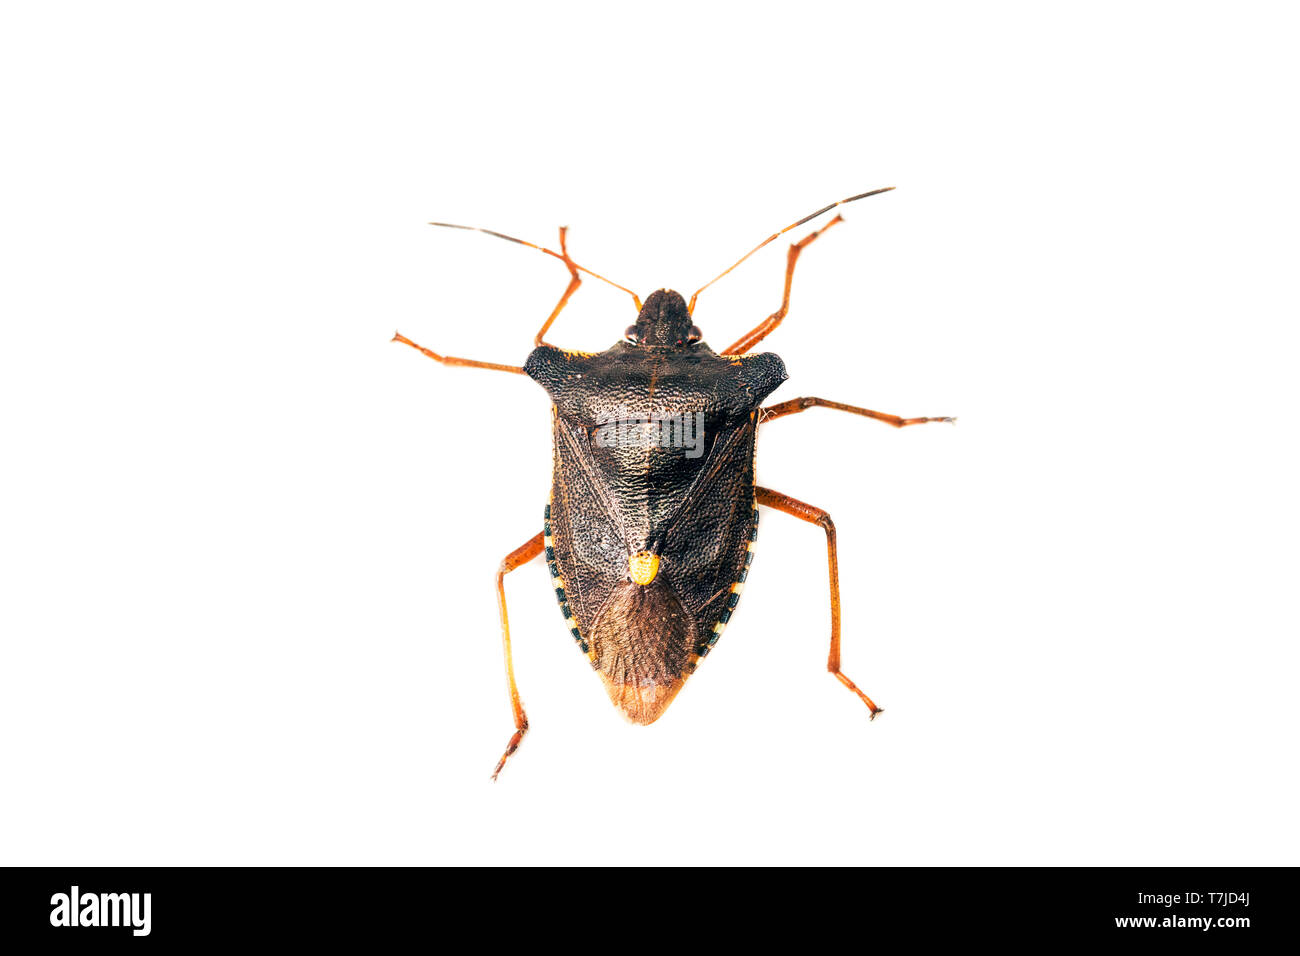 Red-legged Shieldbug, Pentatoma rufipes Stock Photo